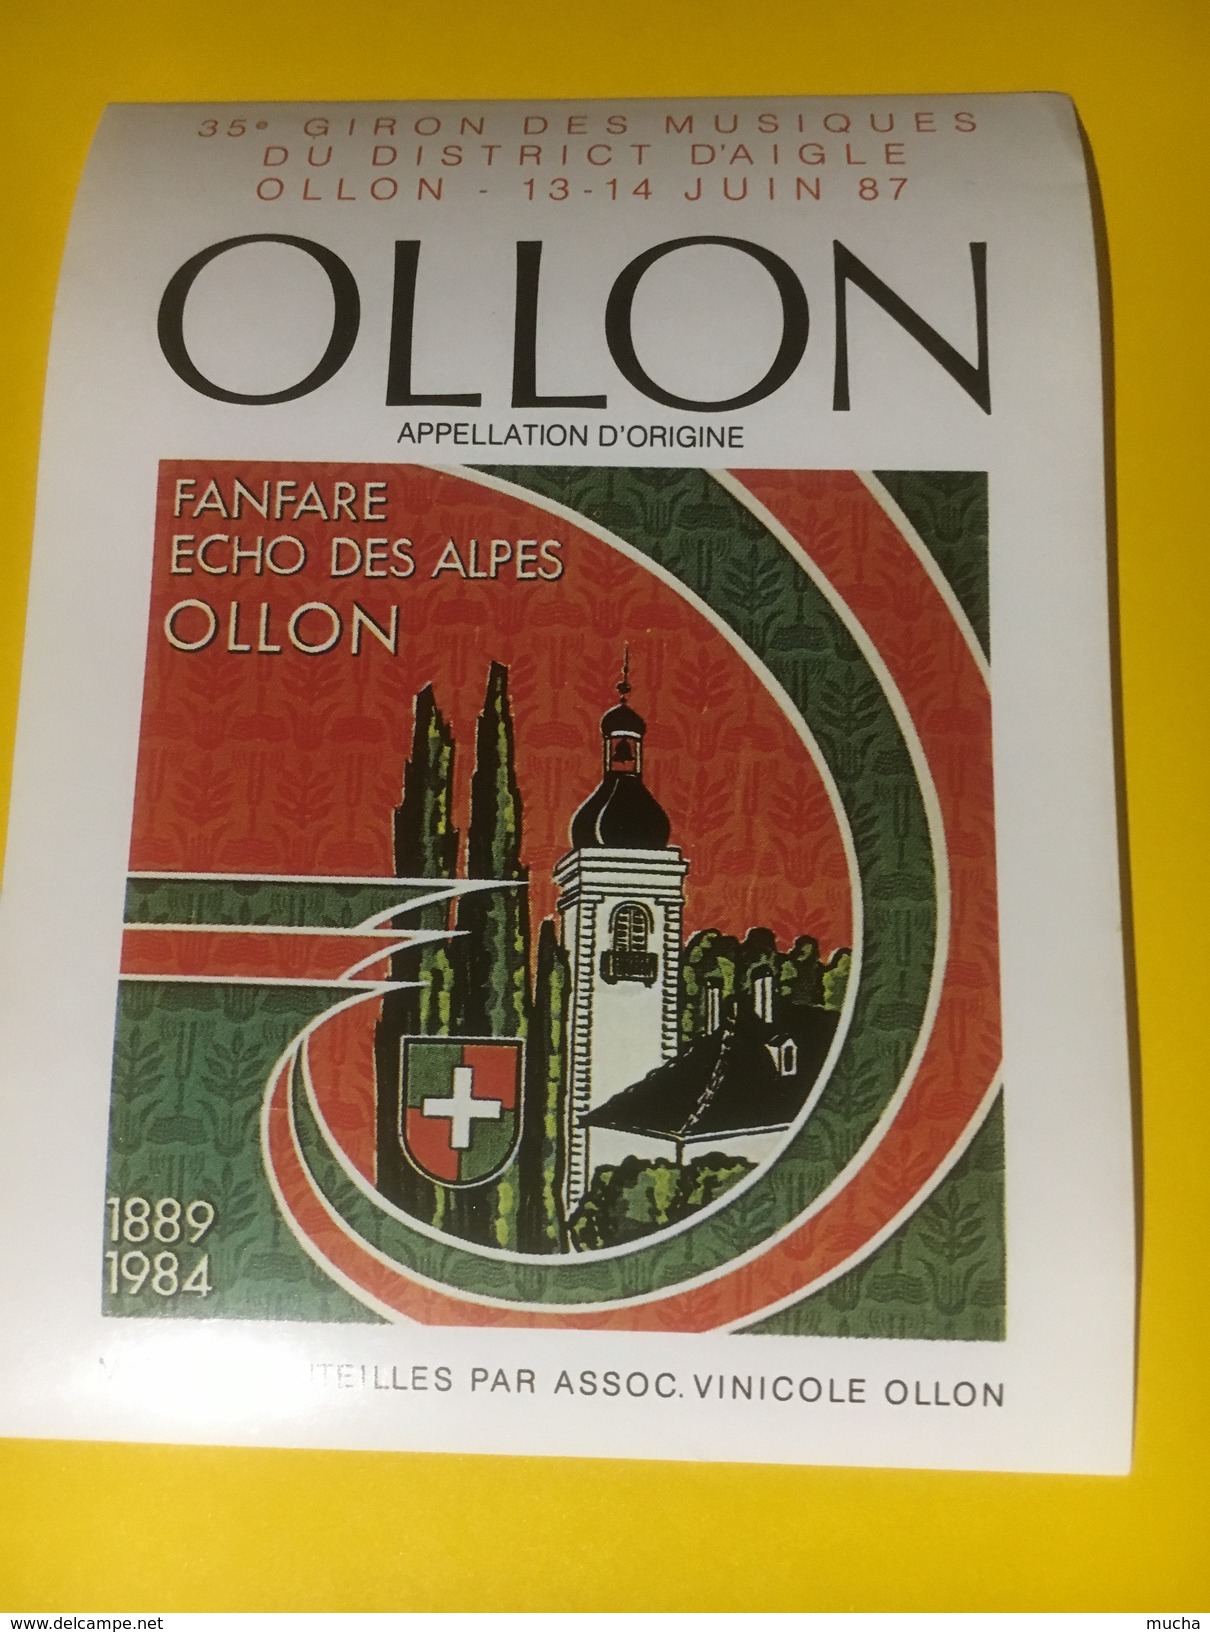 3226 - Suisse Vaud Ollon Fanfare Echo Des Alpes 35e Giron Des Musiques Du District D'AIgle 1987 - Música